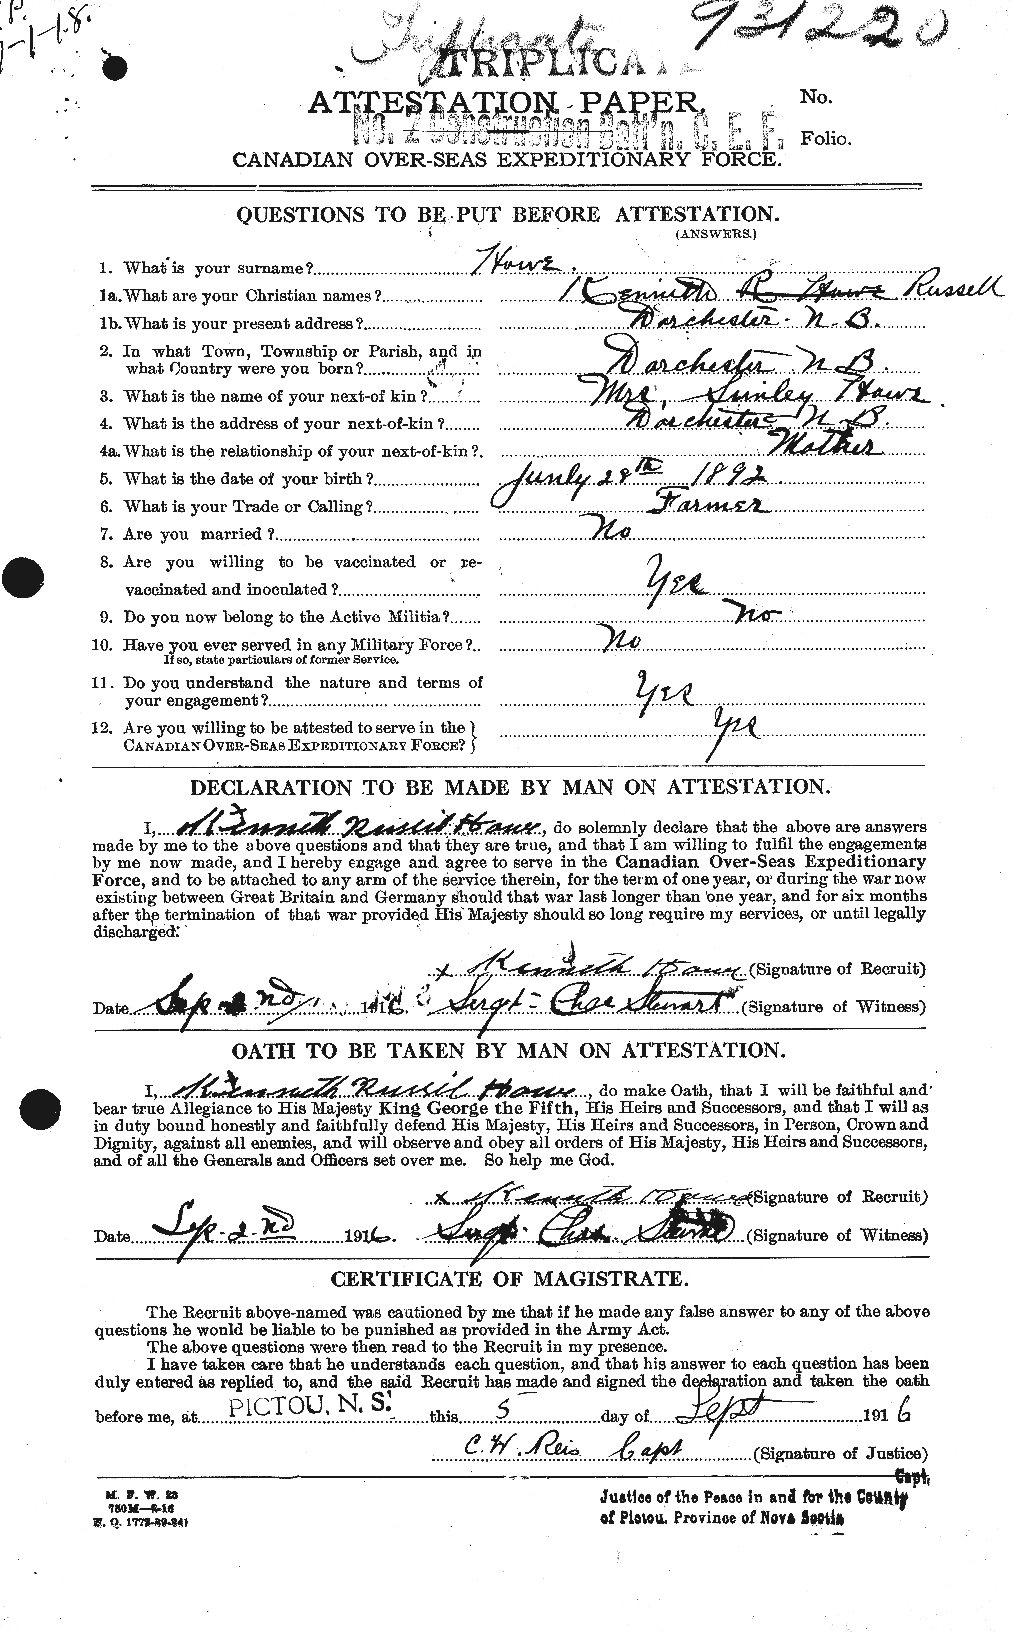 Dossiers du Personnel de la Première Guerre mondiale - CEC 402064a